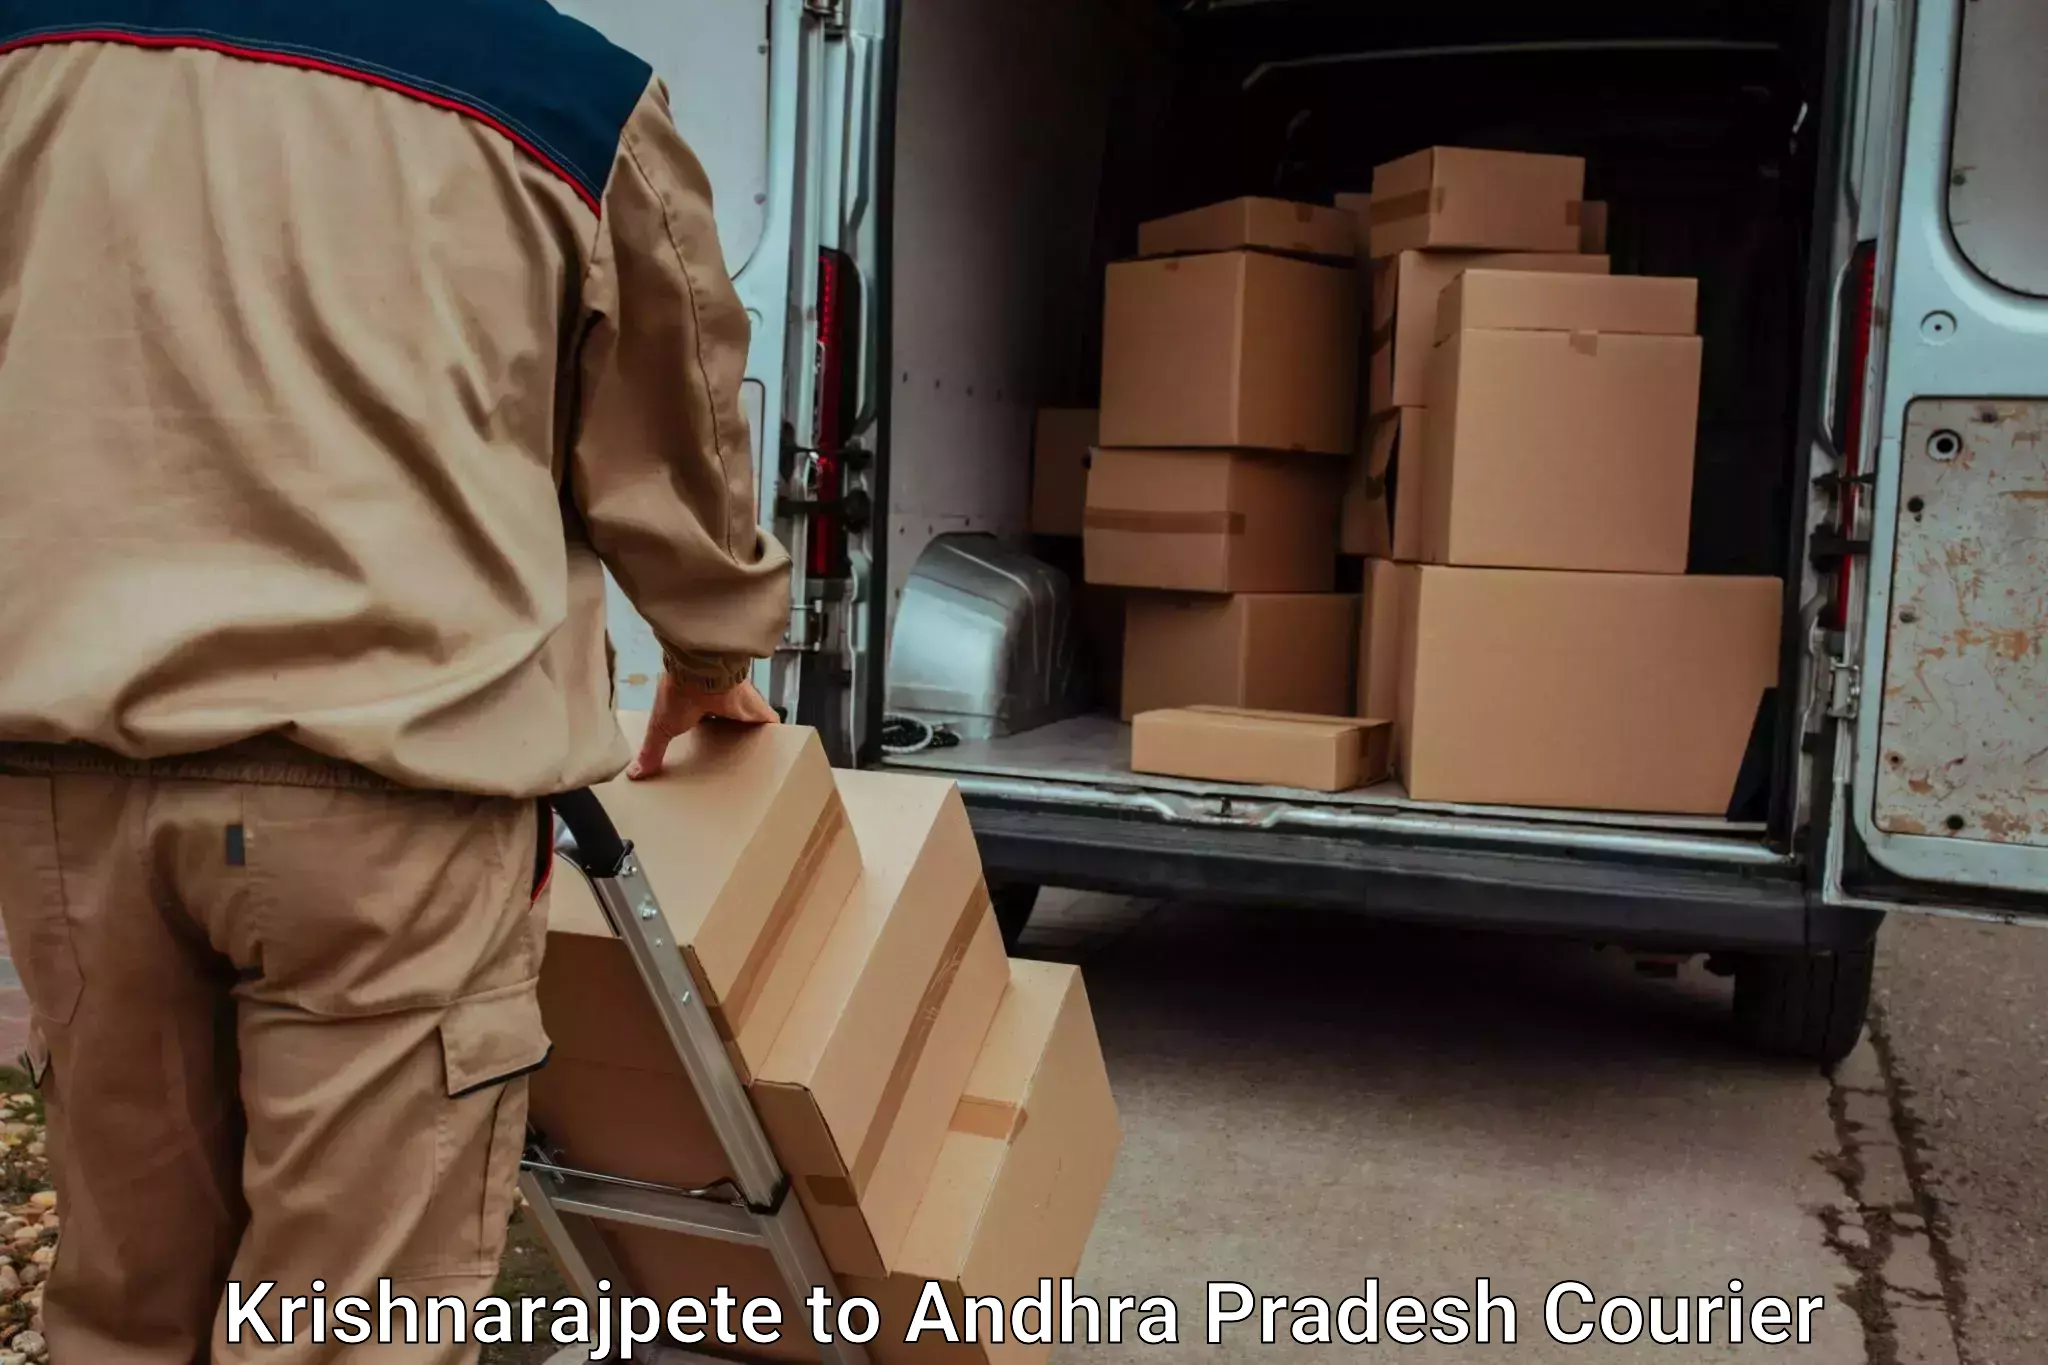 Luggage delivery optimization Krishnarajpete to Yerragondapalem